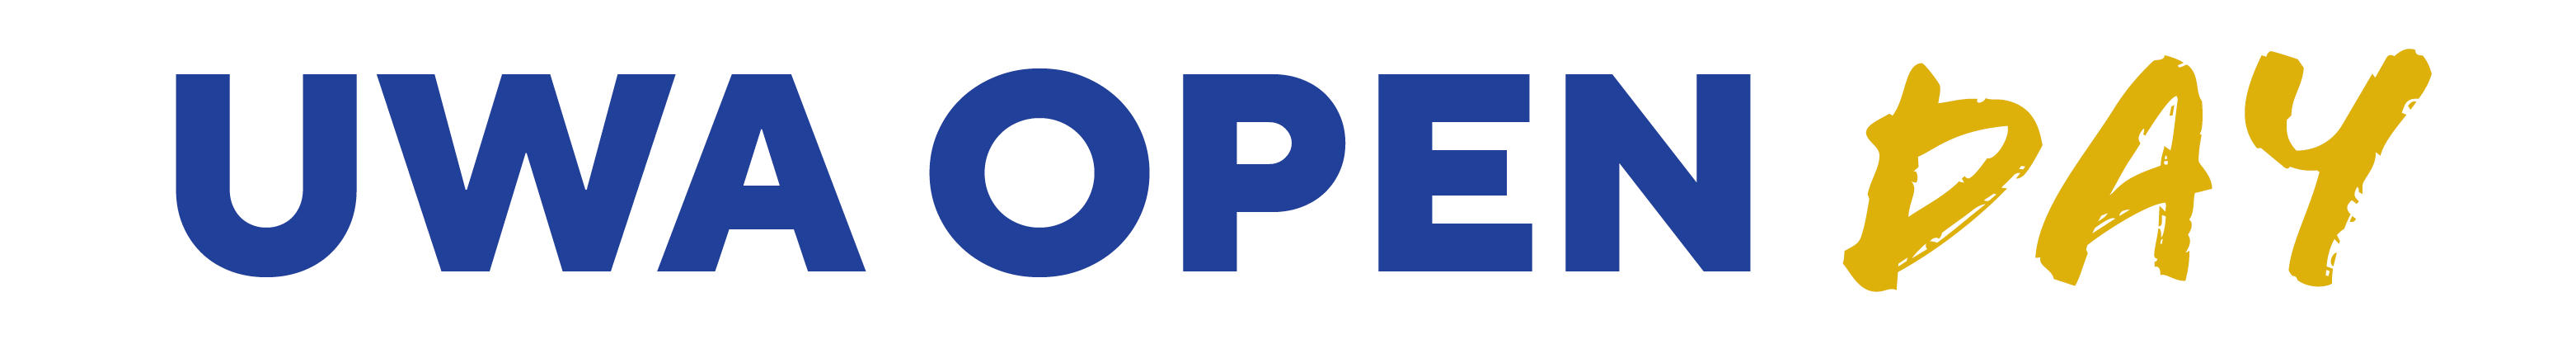 UWa Open Day logo